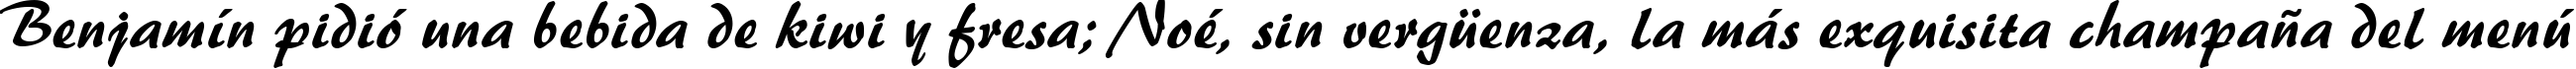 Пример написания шрифтом font75 текста на испанском